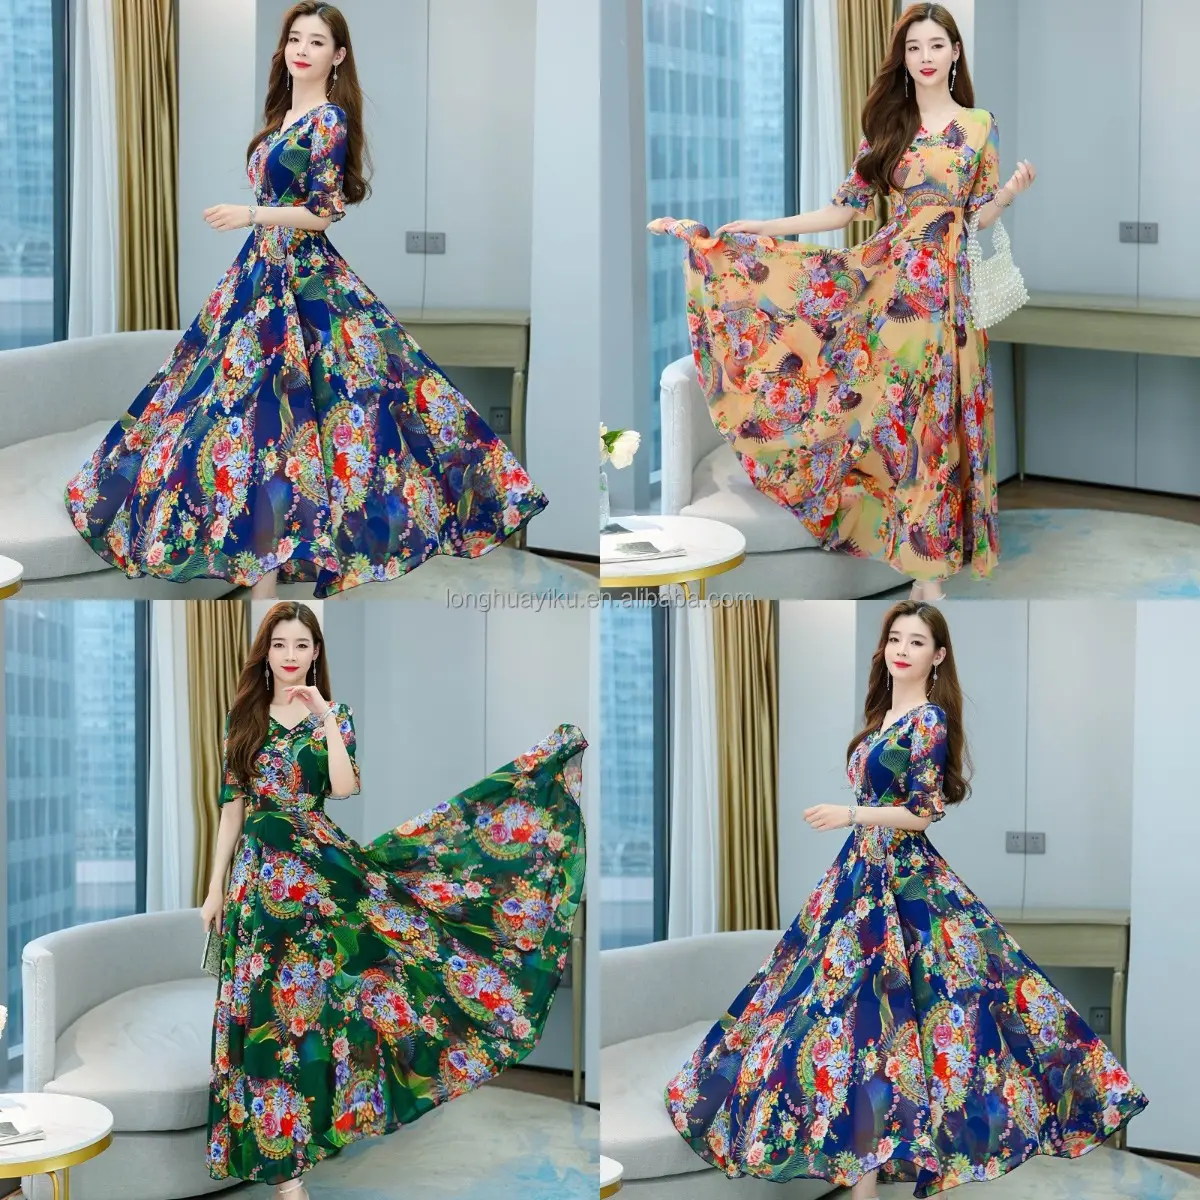 Printemps nouvelle robe imprimée de style ethnique pour les femmes avec des motifs floraux attachés à la taille, manches bulle, grande jupe longue plissée